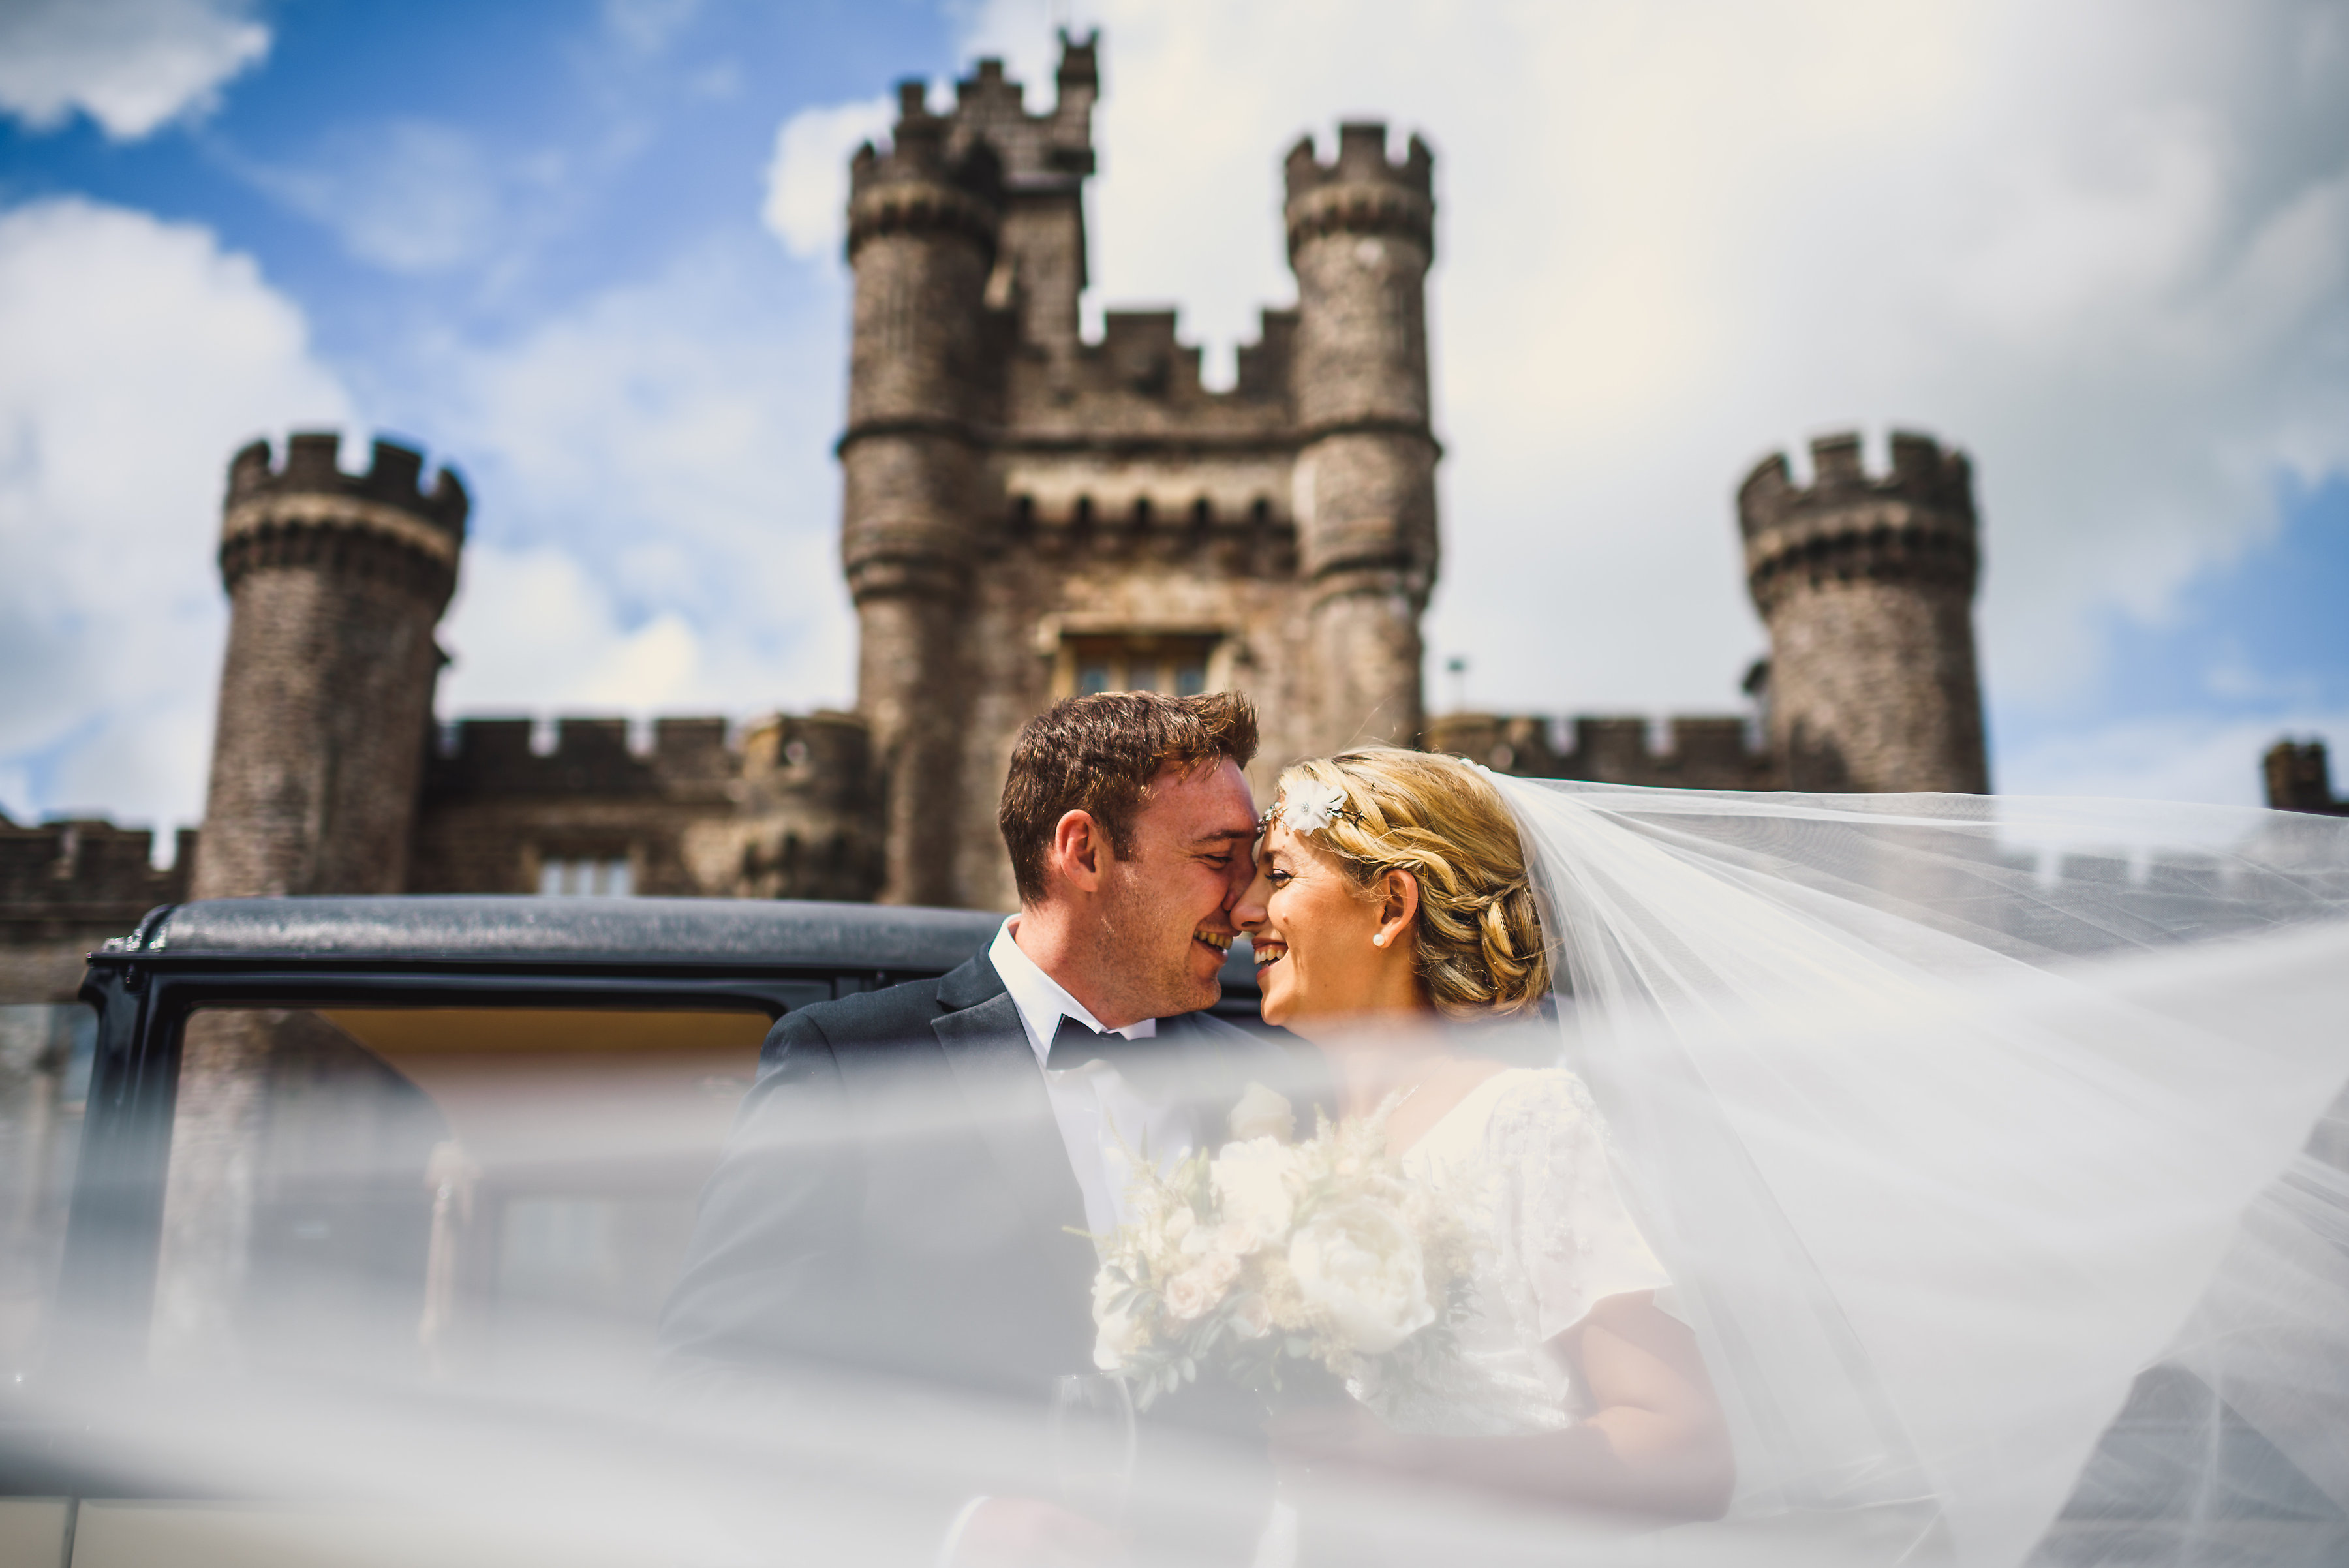 Hensol Castle Luxury Wedding Venue